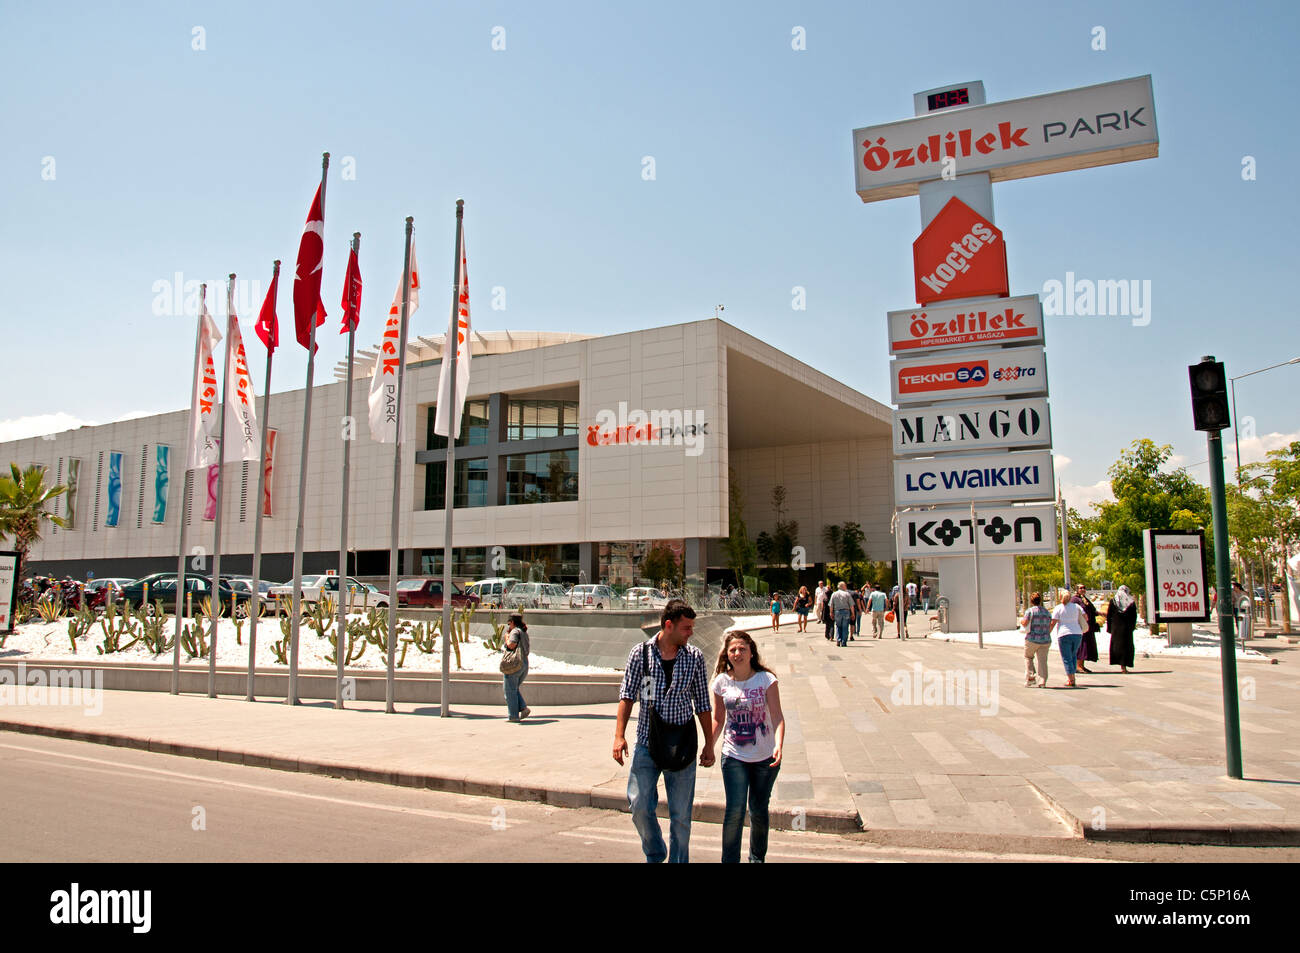 Modern Shopping mall Antalya Turkey Ozdilek Park Stock Photo